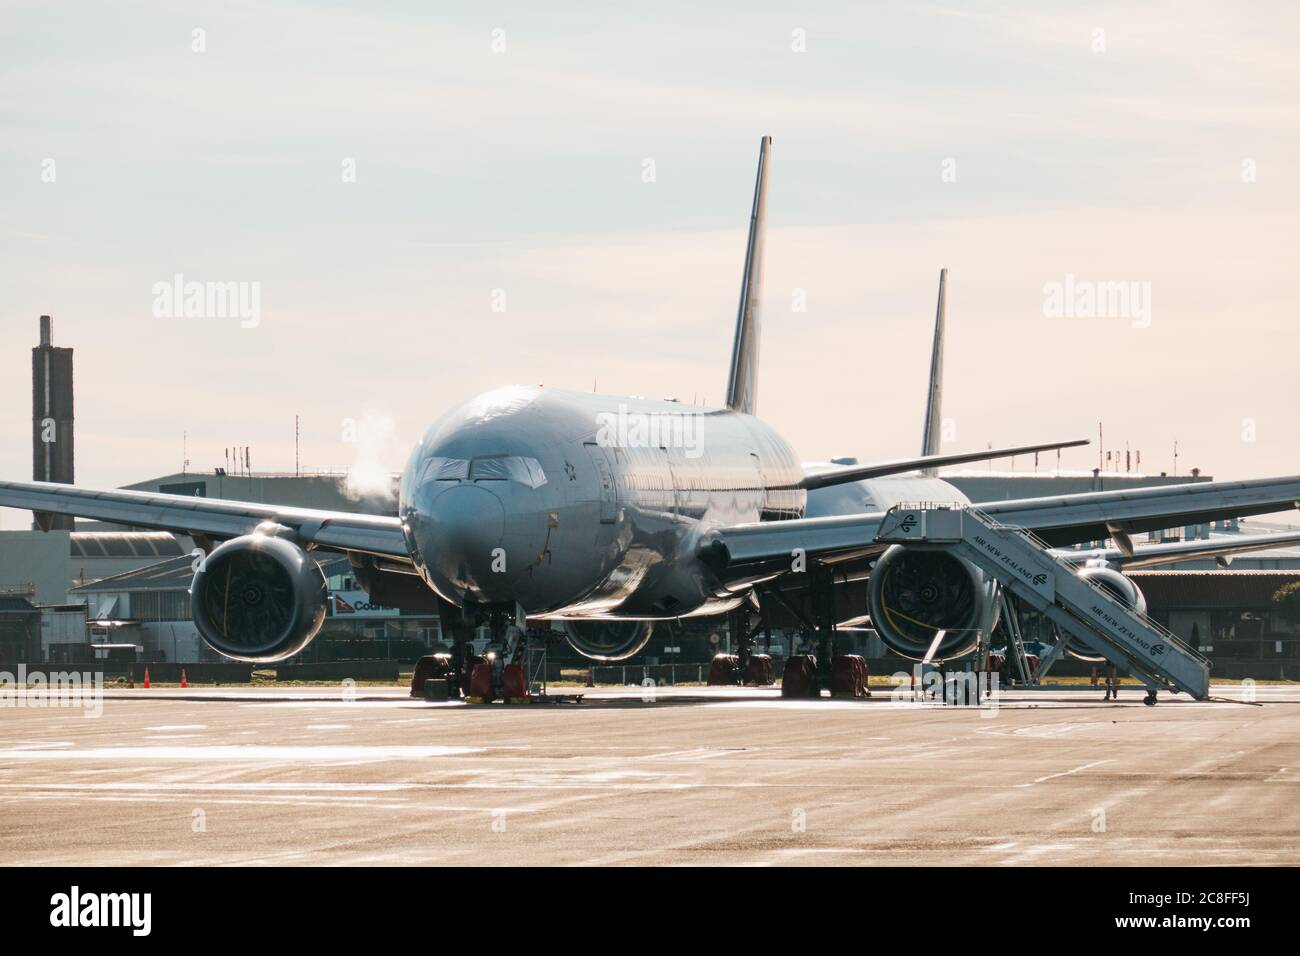 Air New Zealand Boeing 777 parkte im Lager am Flughafen Christchurch während der COVID-19 Pandemie, die Flugreisenachfrage Einbruch sah Stockfoto